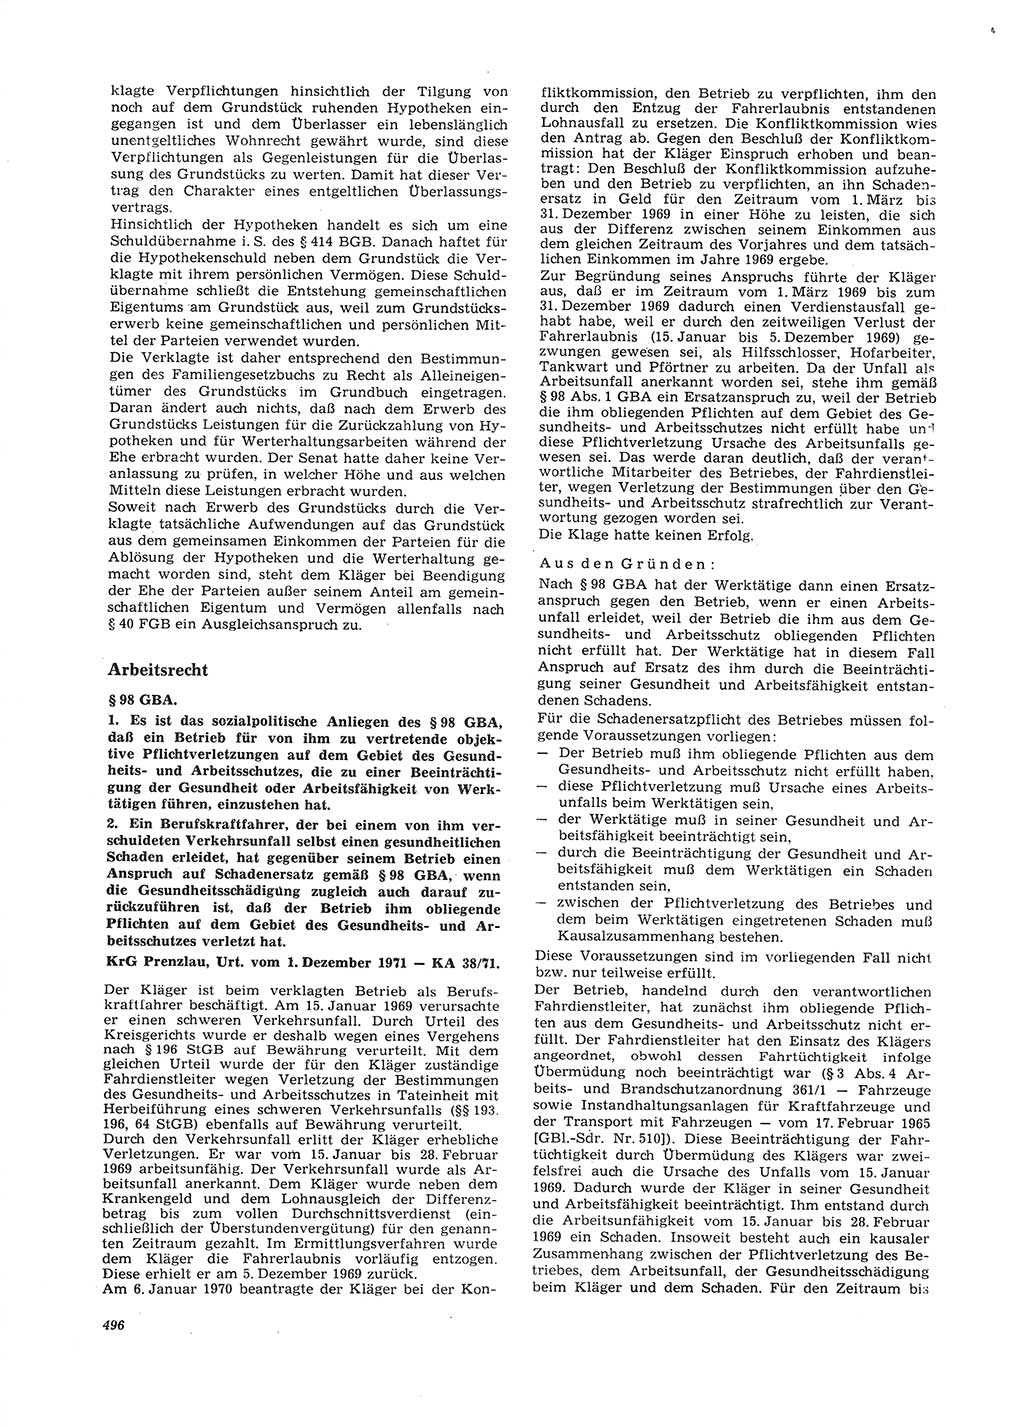 Neue Justiz (NJ), Zeitschrift für Recht und Rechtswissenschaft [Deutsche Demokratische Republik (DDR)], 26. Jahrgang 1972, Seite 496 (NJ DDR 1972, S. 496)